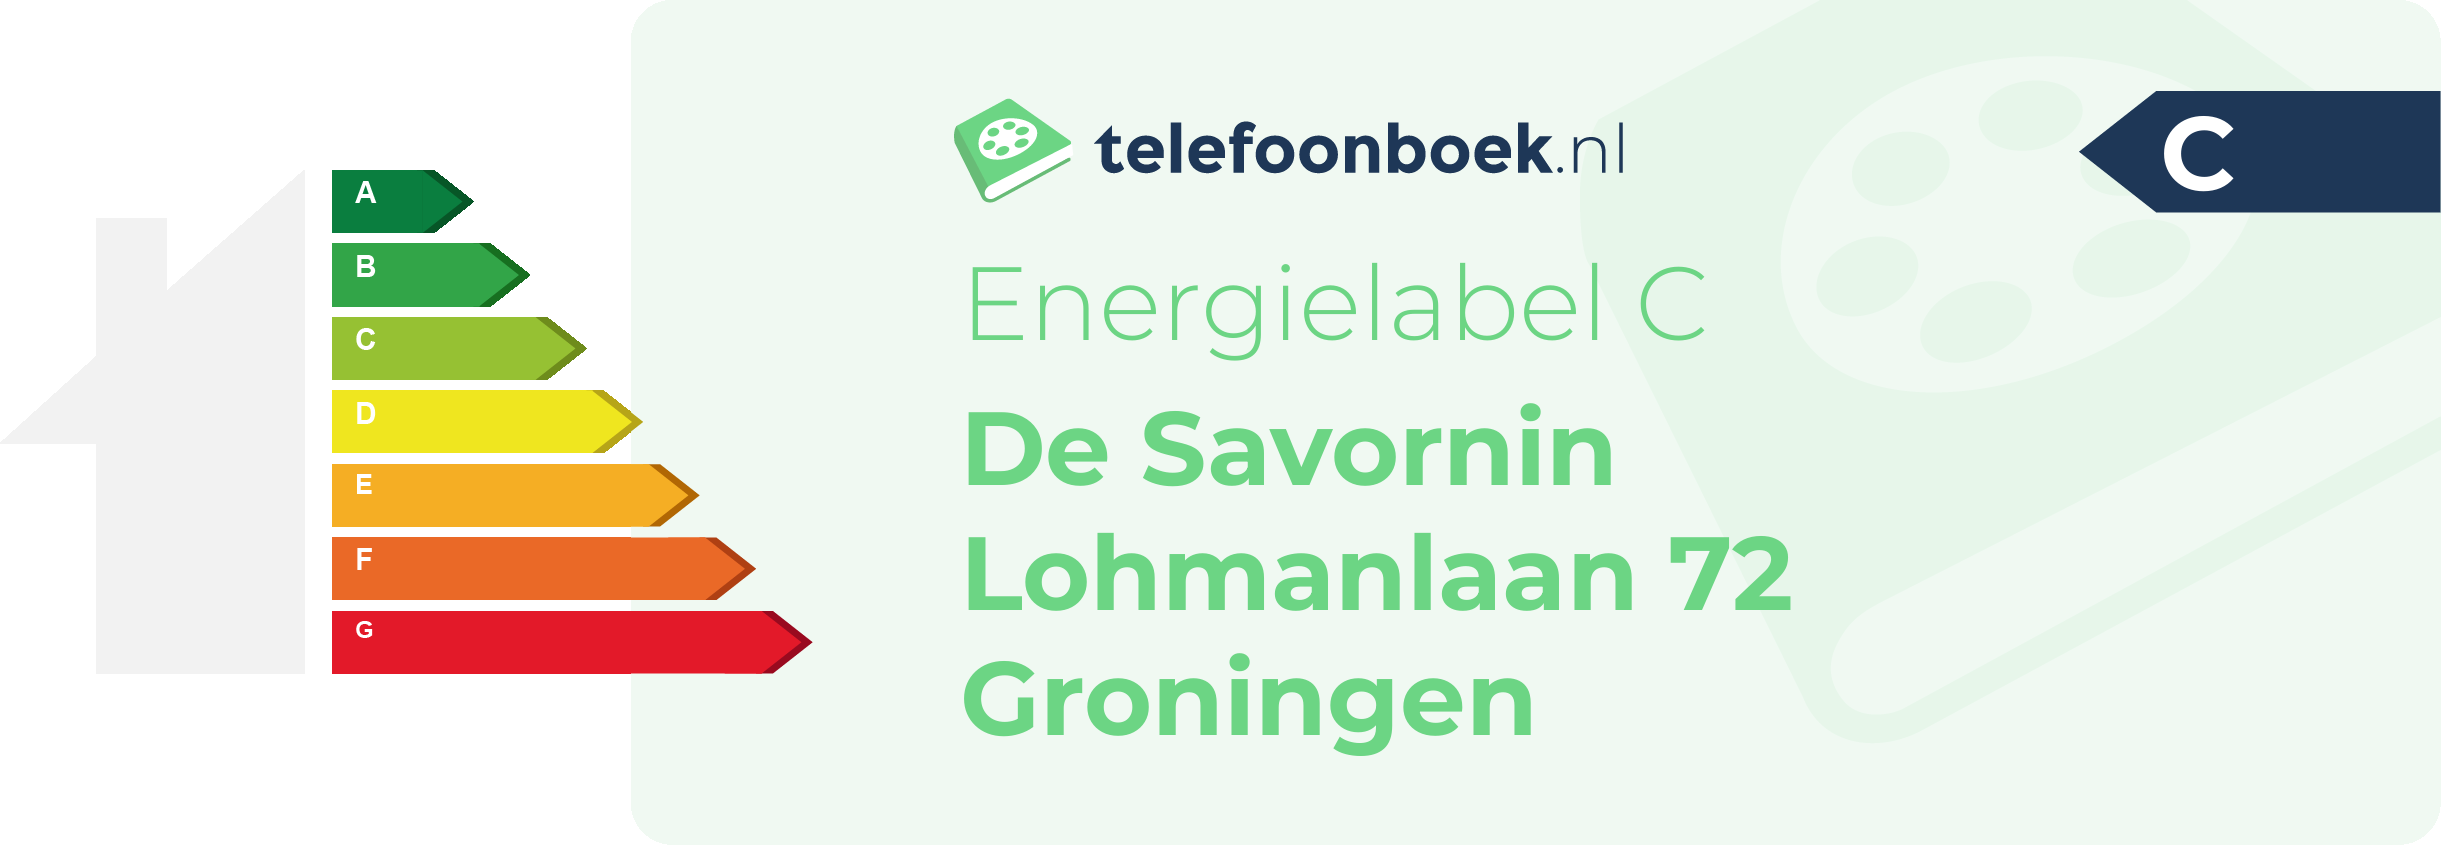 Energielabel De Savornin Lohmanlaan 72 Groningen